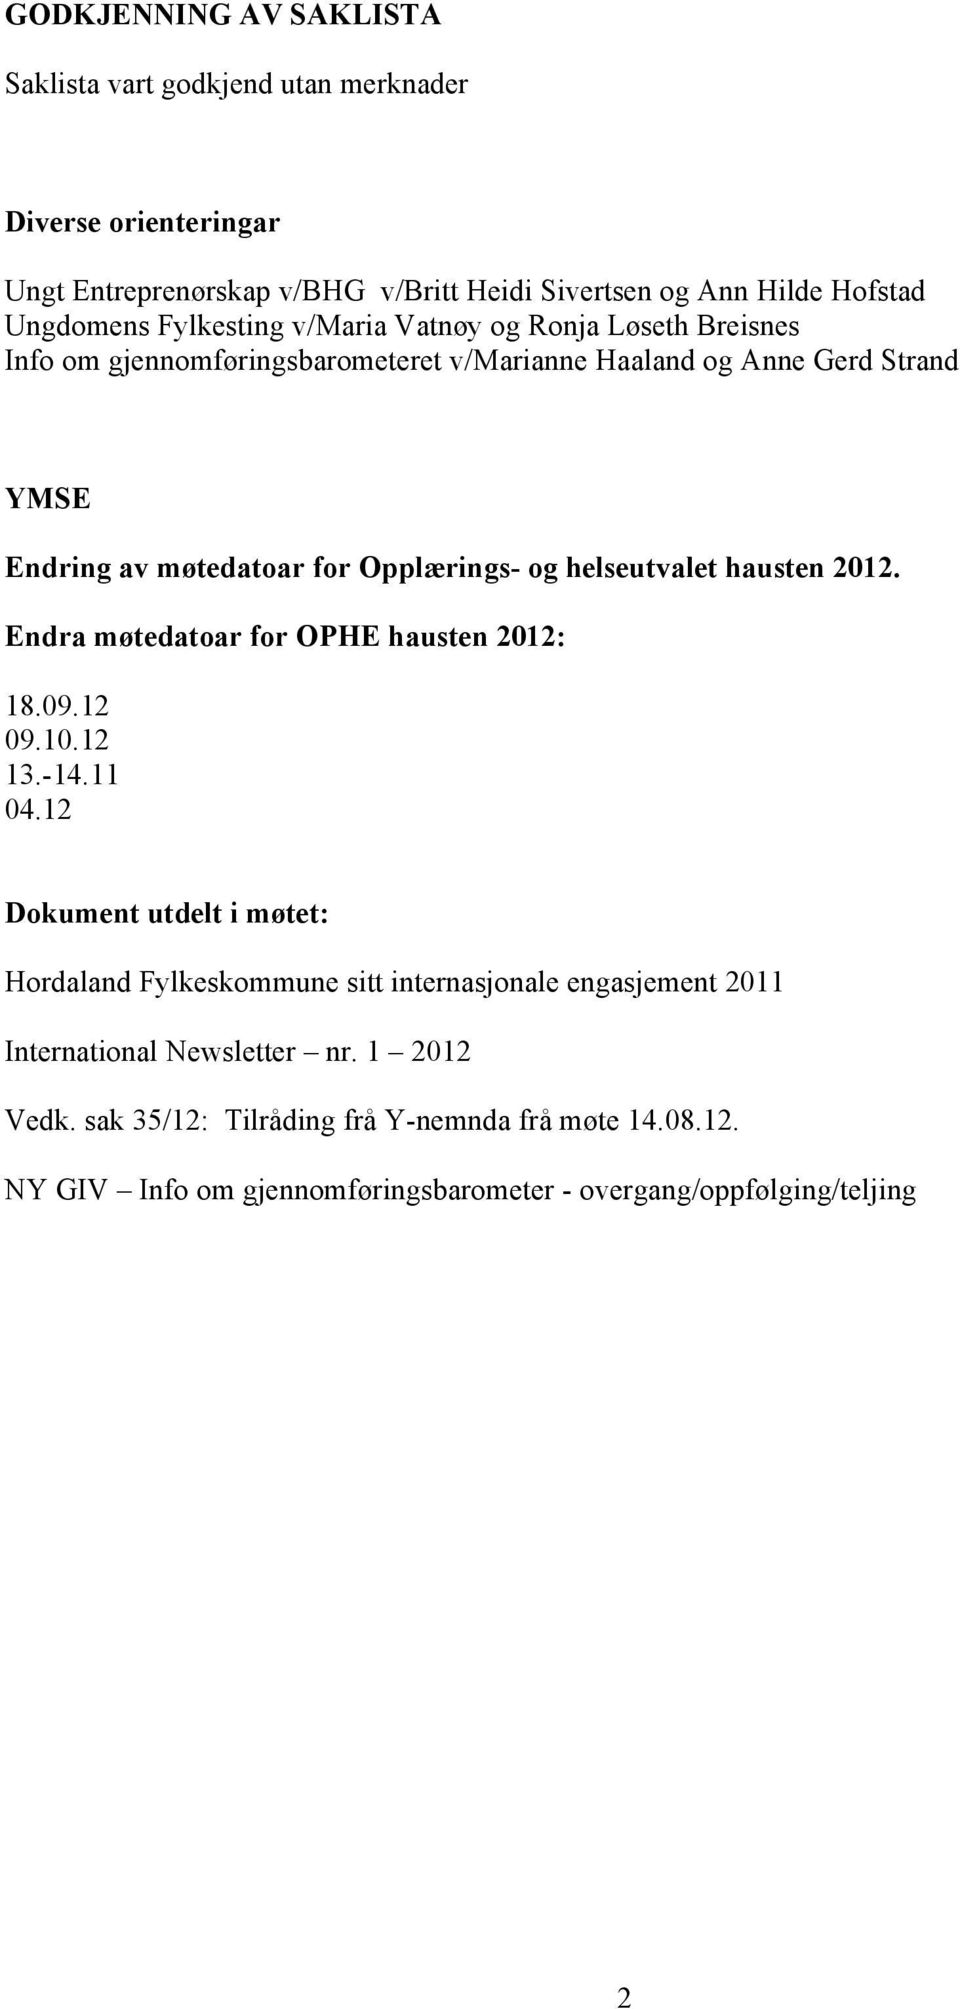 helseutvalet hausten 2012. Endra møtedatoar for OPHE hausten 2012: 18.09.12 09.10.12 13.-14.11 04.